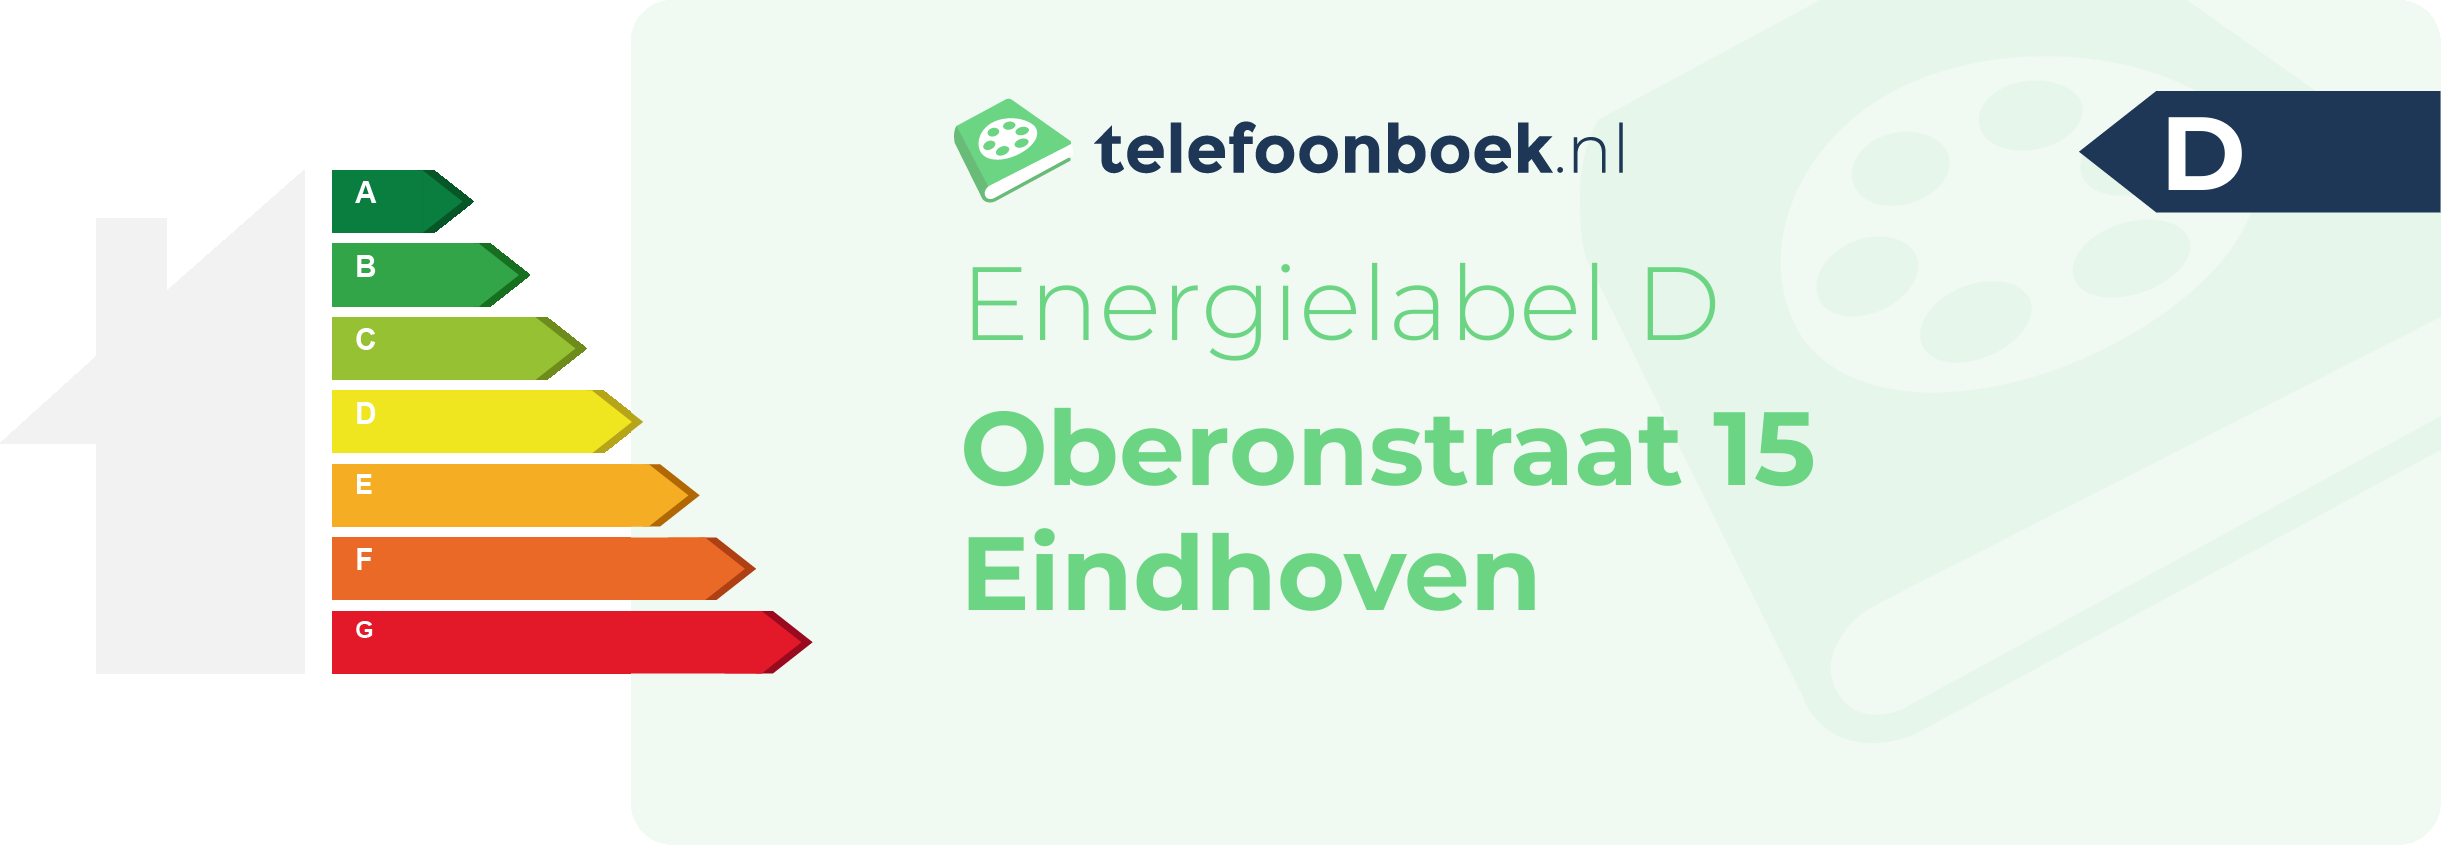 Energielabel Oberonstraat 15 Eindhoven